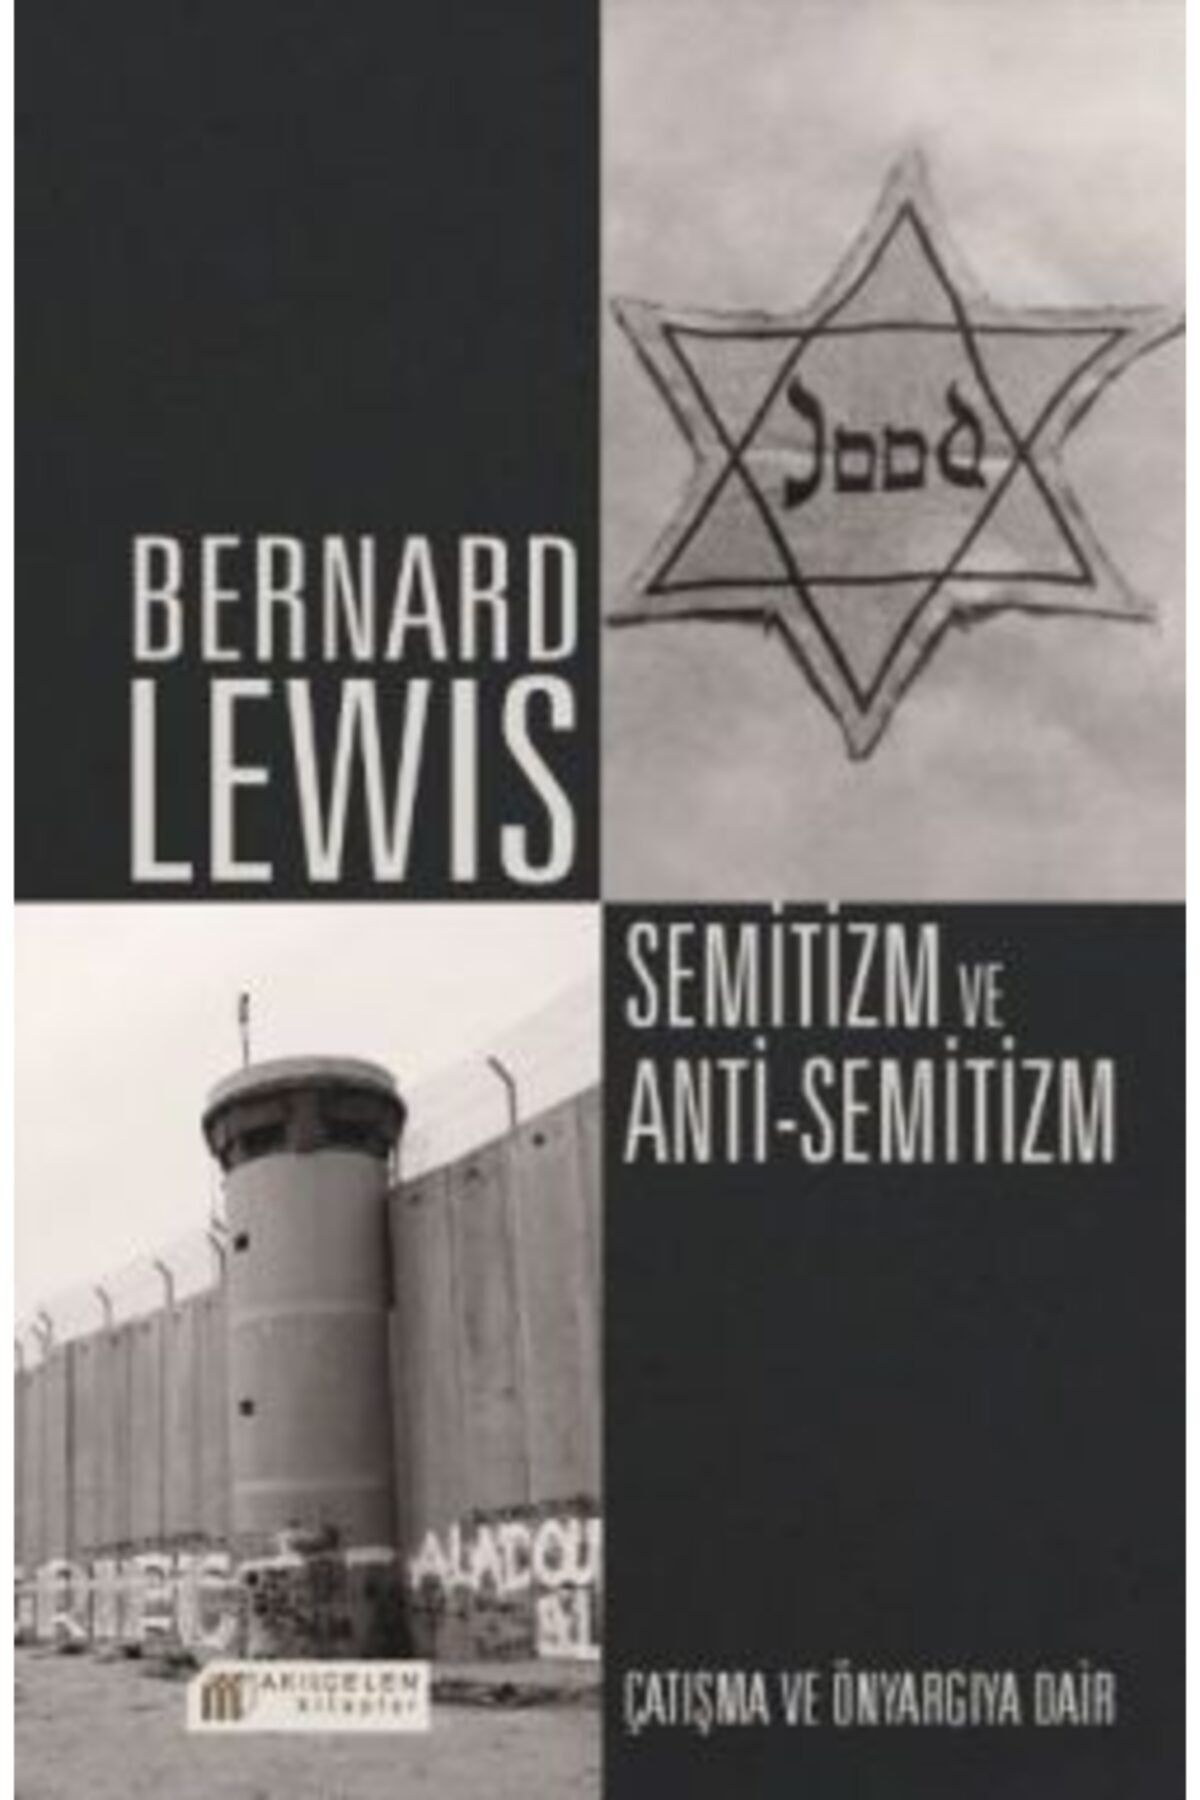 Akıl Çelen Kitaplar Semitizm Ve Anti Semitizm - Çatışma Ve Önyargıya Dair Bernard Lewis